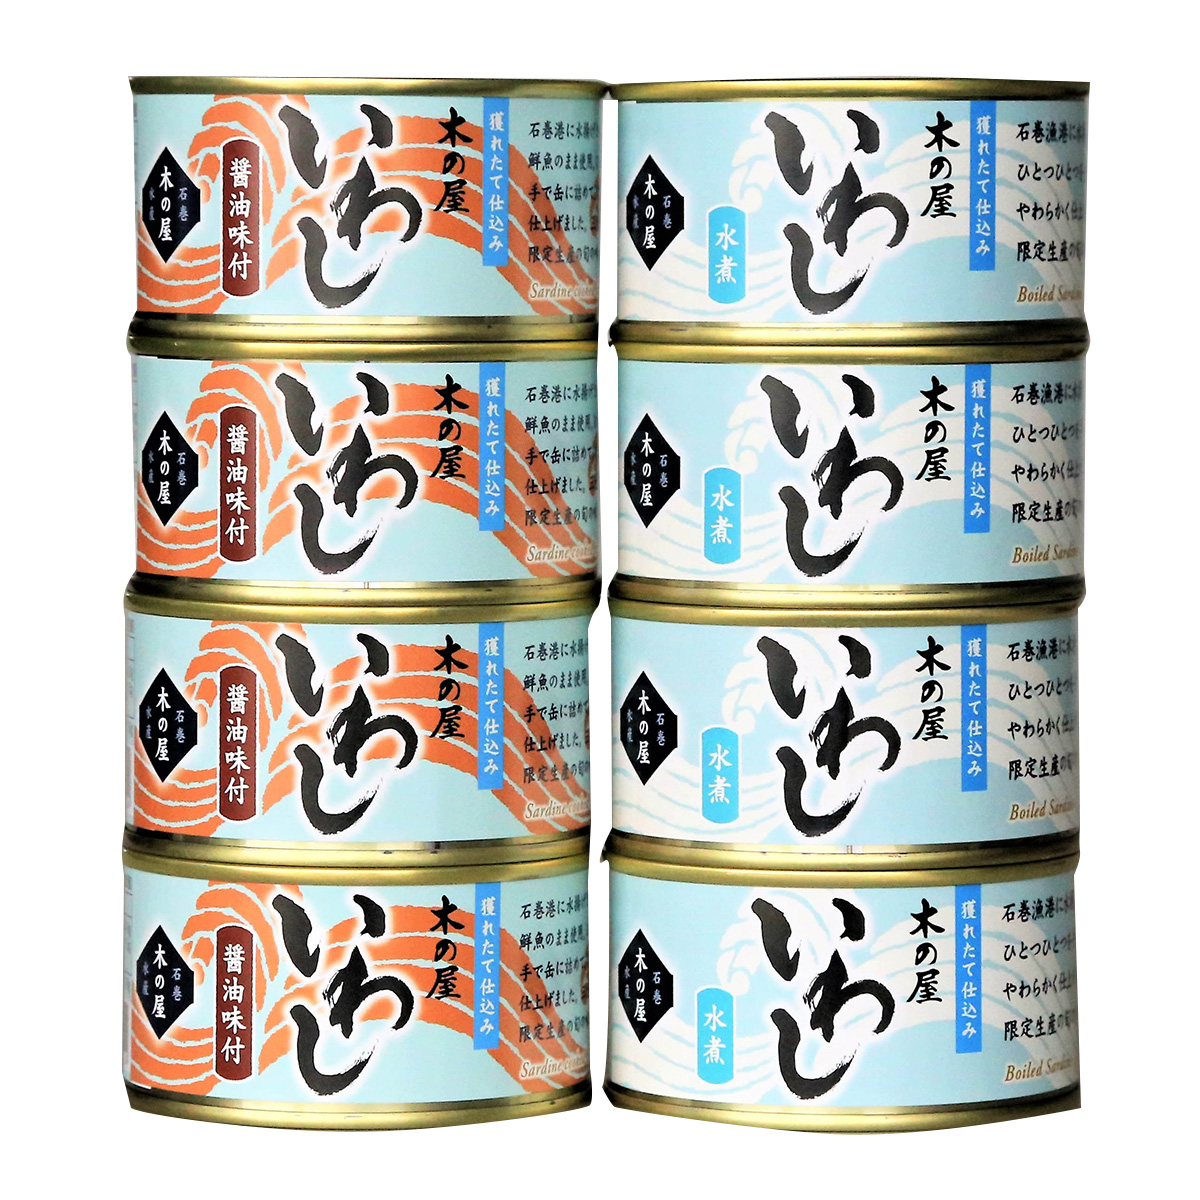 宮城県フレッシュパックいわし2種8缶セット(醤油・水煮)